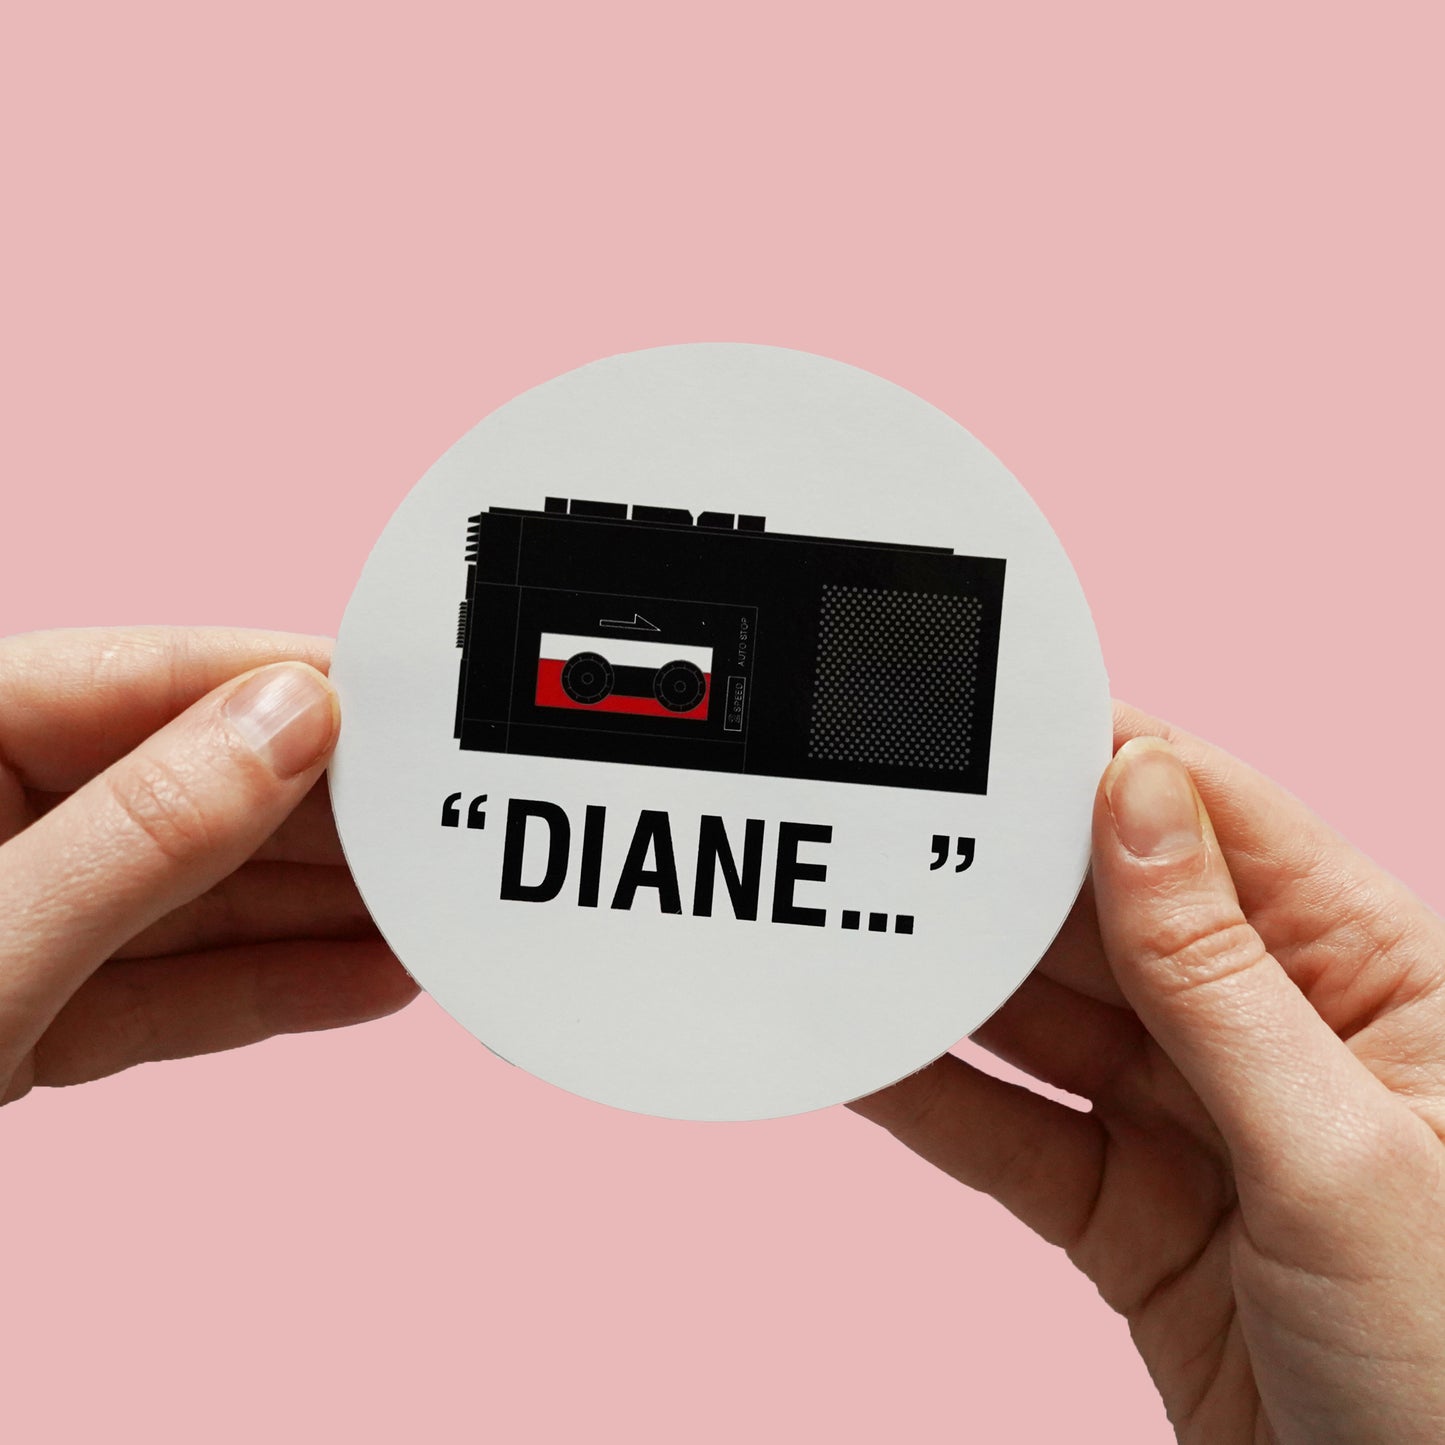 Twin Peaks 'Diane...' Sticker,